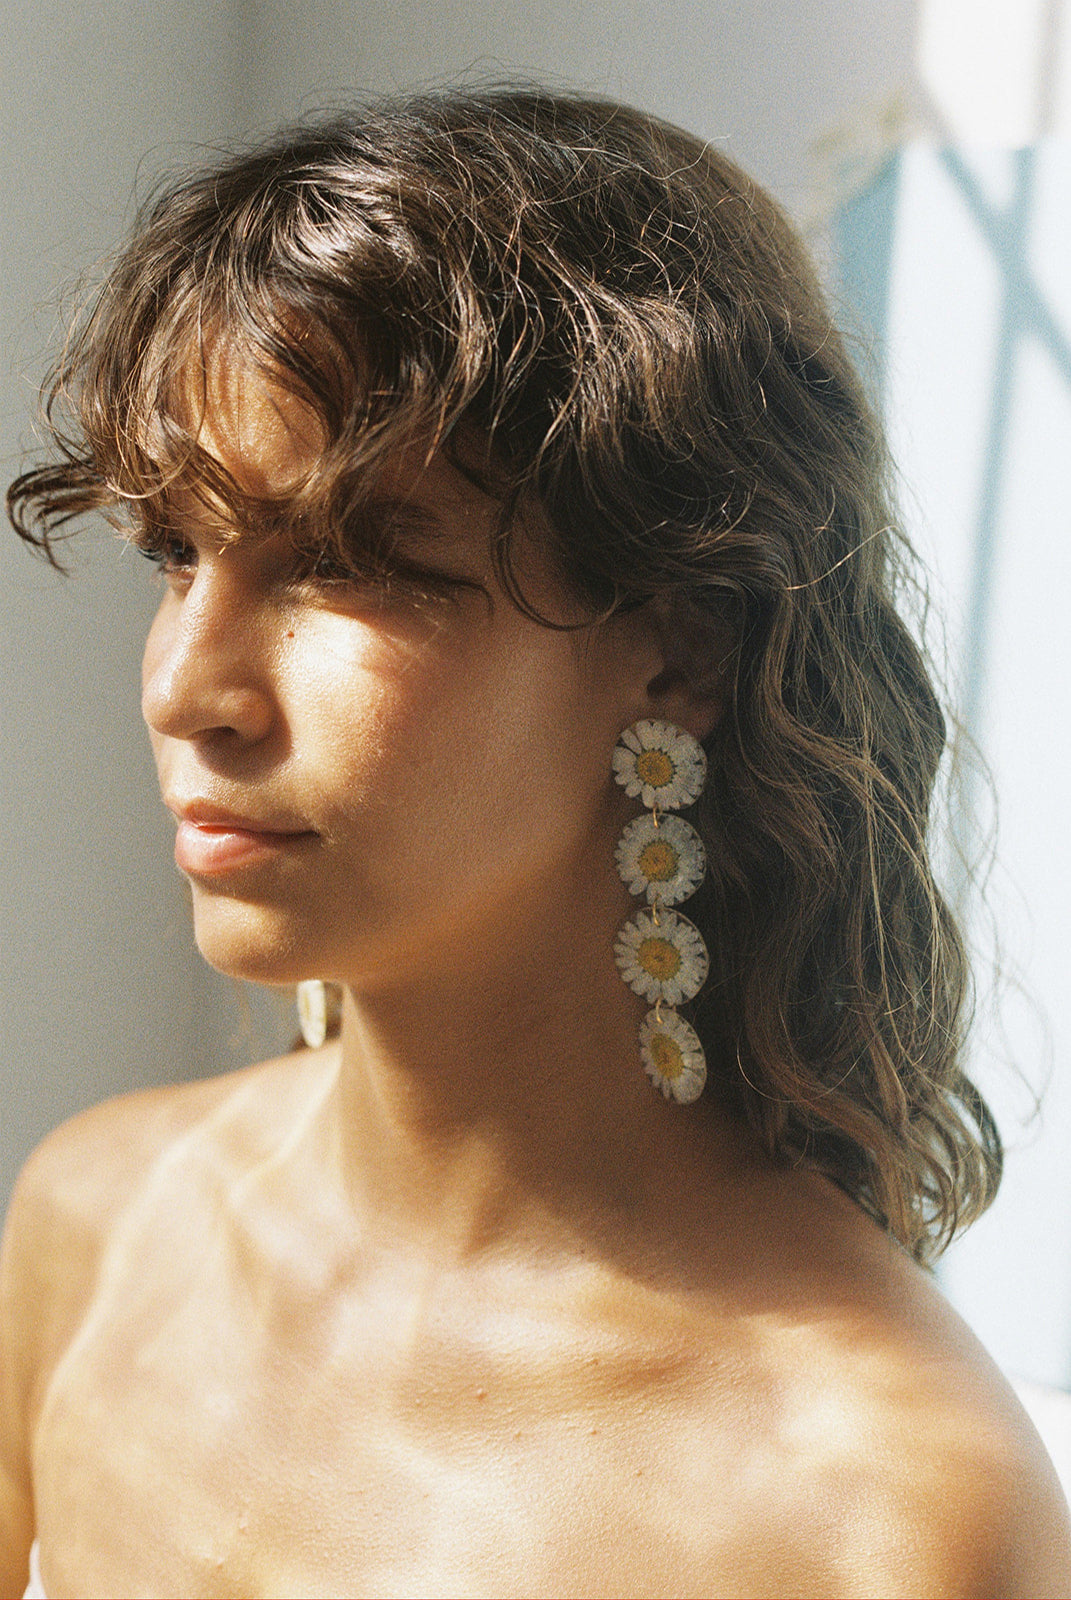 Margaritas earrings